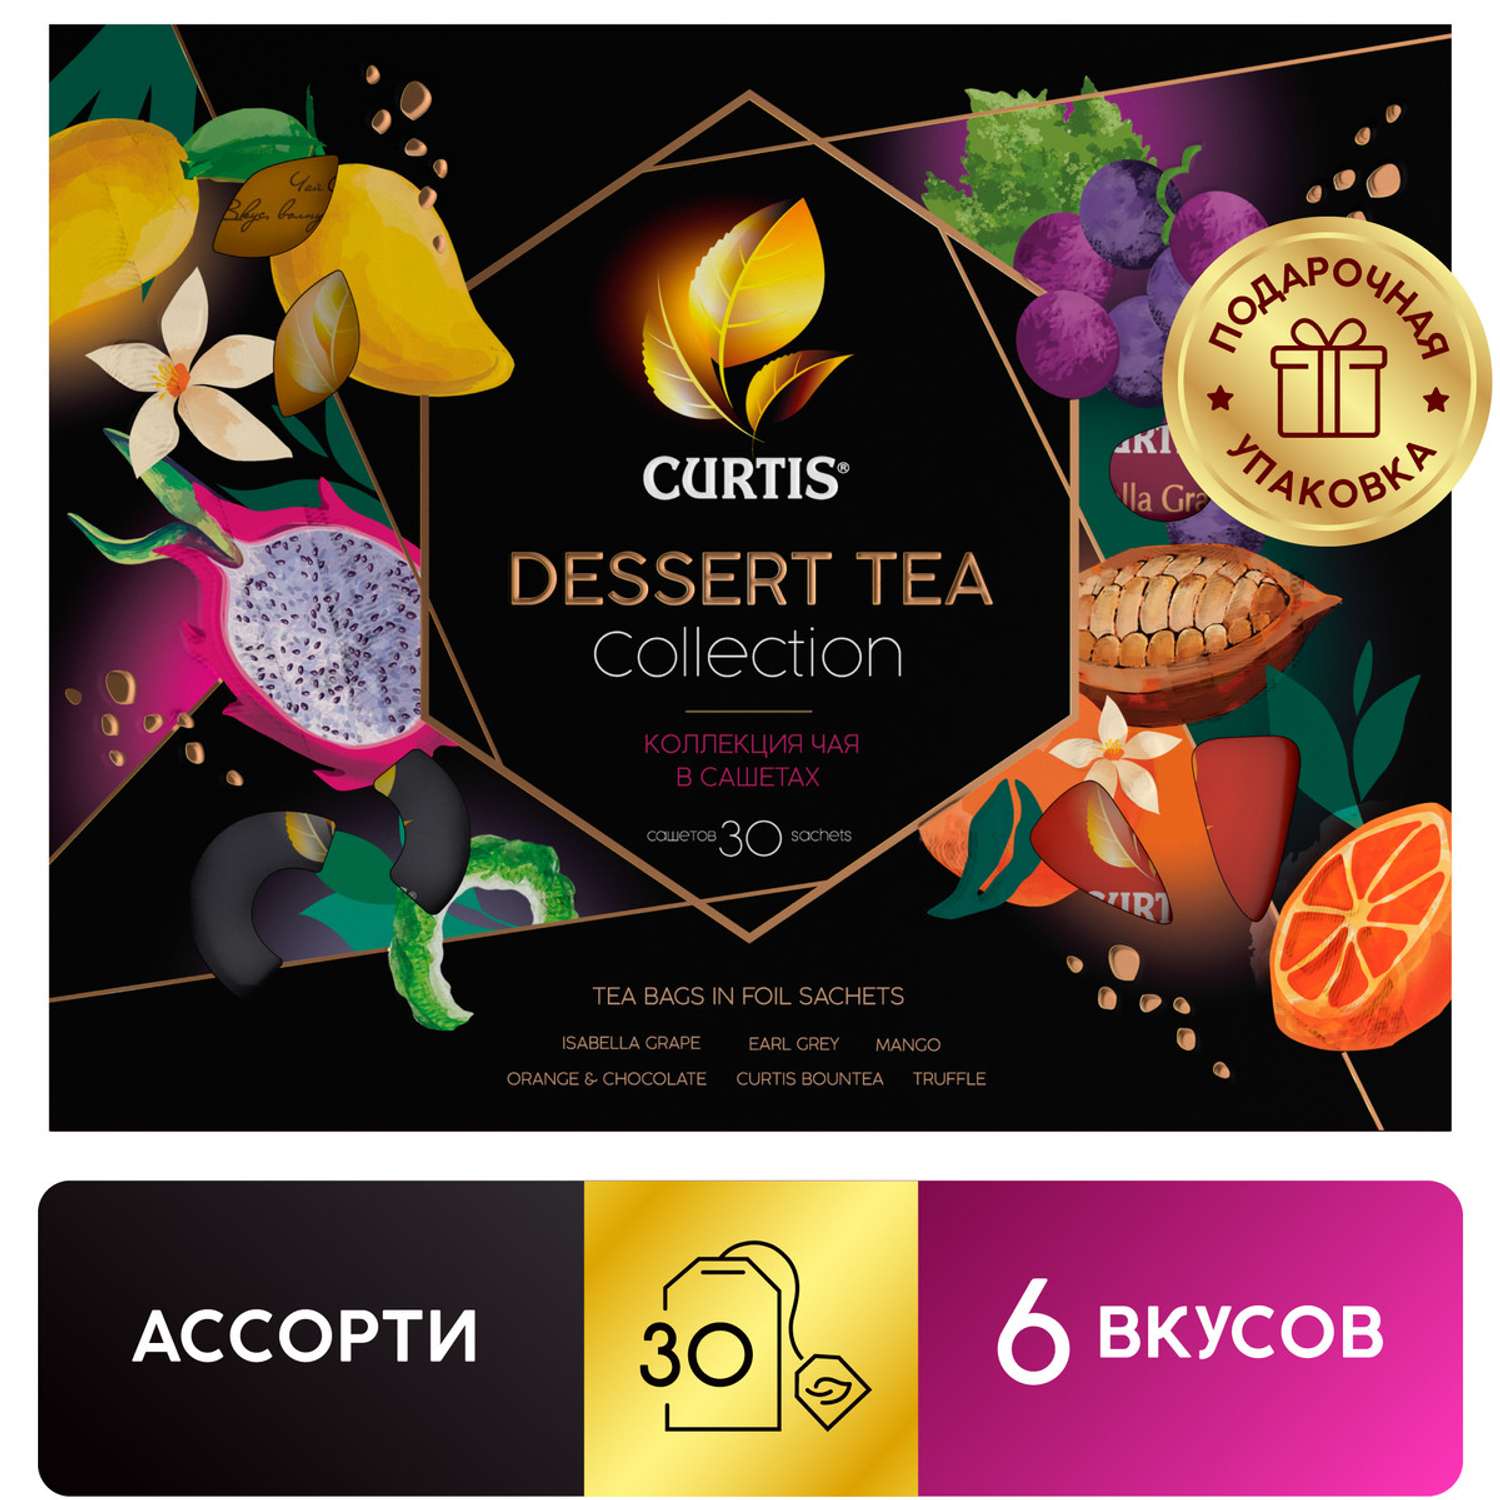 Чайное ассорти Curtis Dessert Tea Collection 30 пакетиков 6 вкусов - фото 2